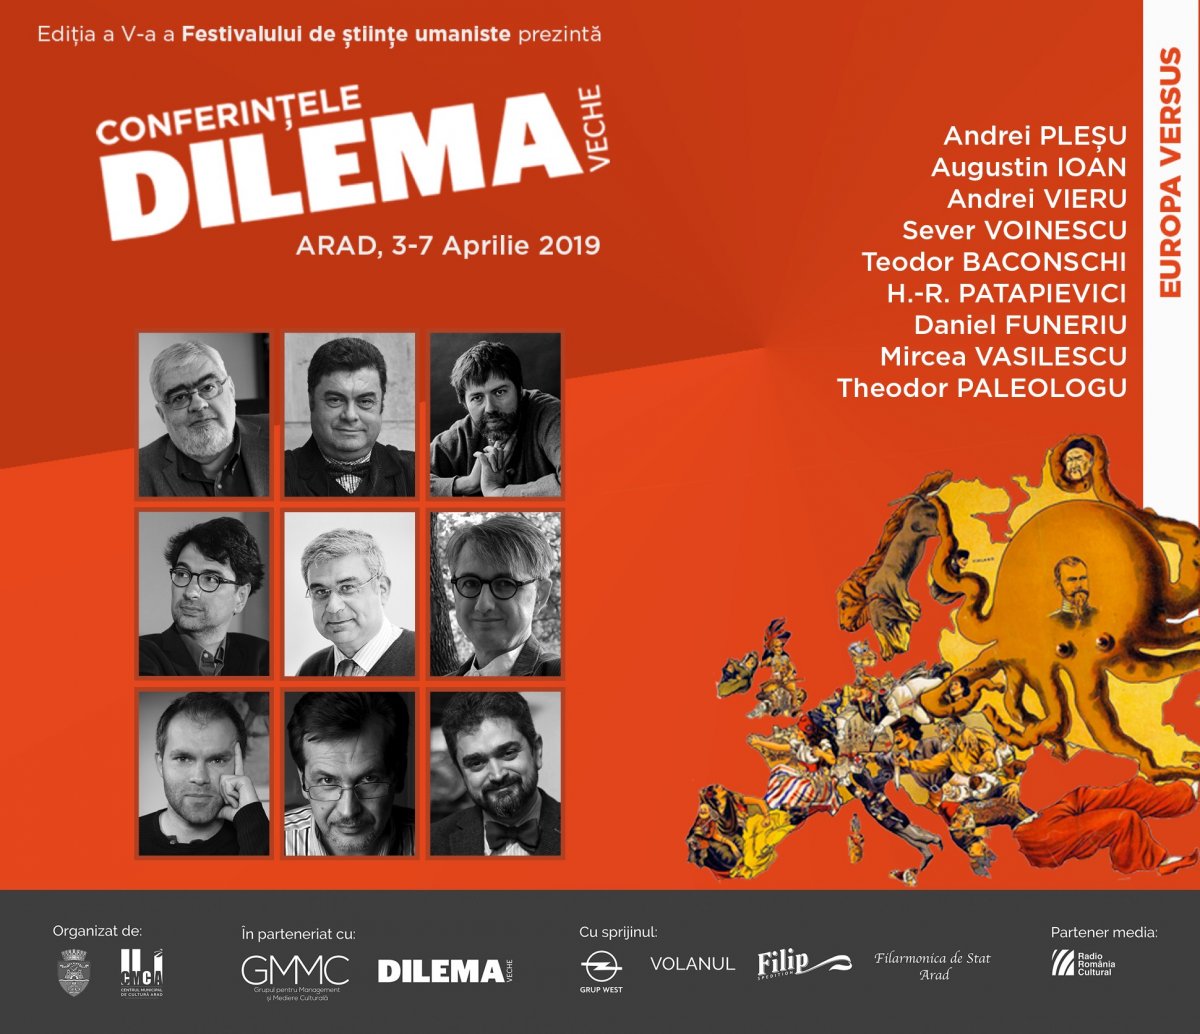 Conferințele Dilema veche, Arad, 3-7 aprilie 2019